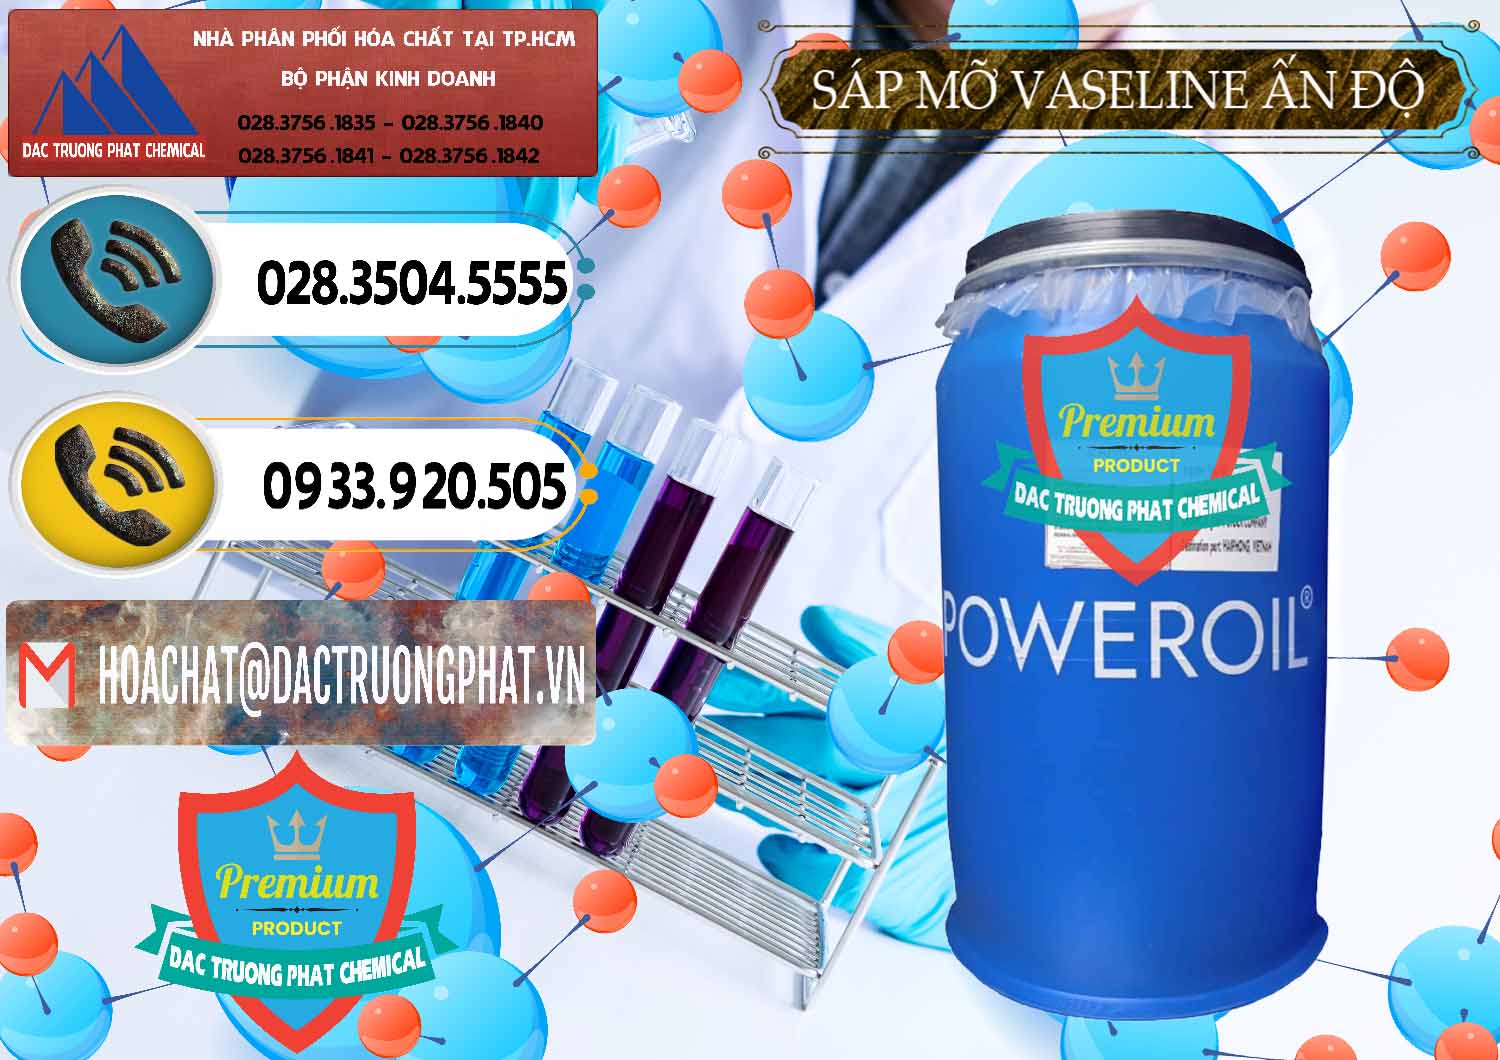 Nơi cung ứng - bán Sáp Mỡ Vaseline Ấn Độ India - 0372 - Chuyên nhập khẩu - cung cấp hóa chất tại TP.HCM - hoachatdetnhuom.vn